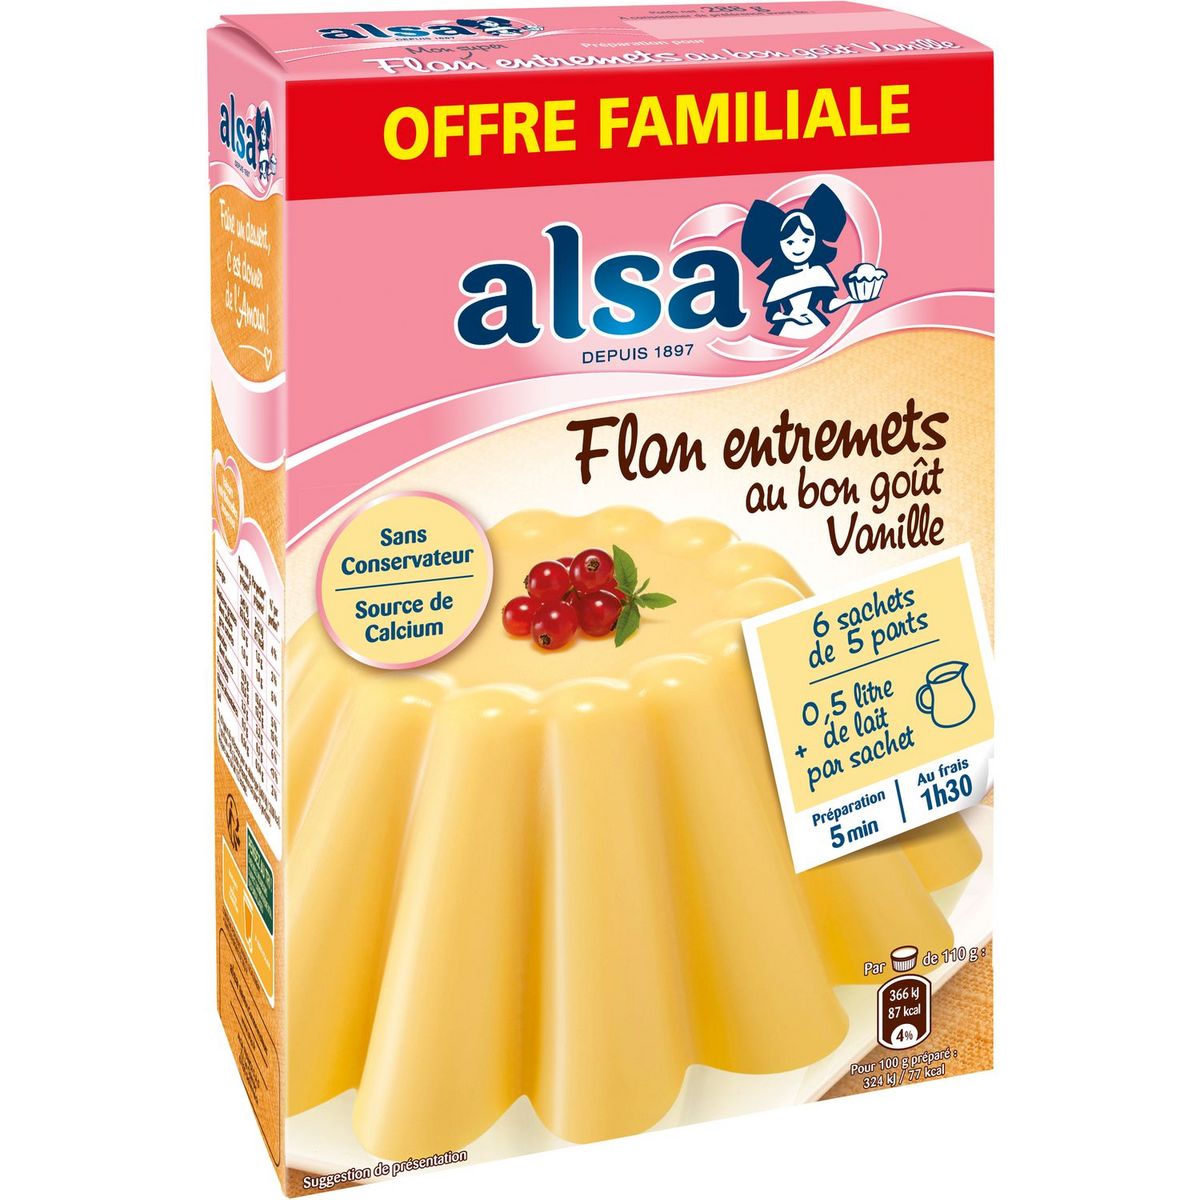 ALSA Préparation flan entremets vanille offre familiale 288g